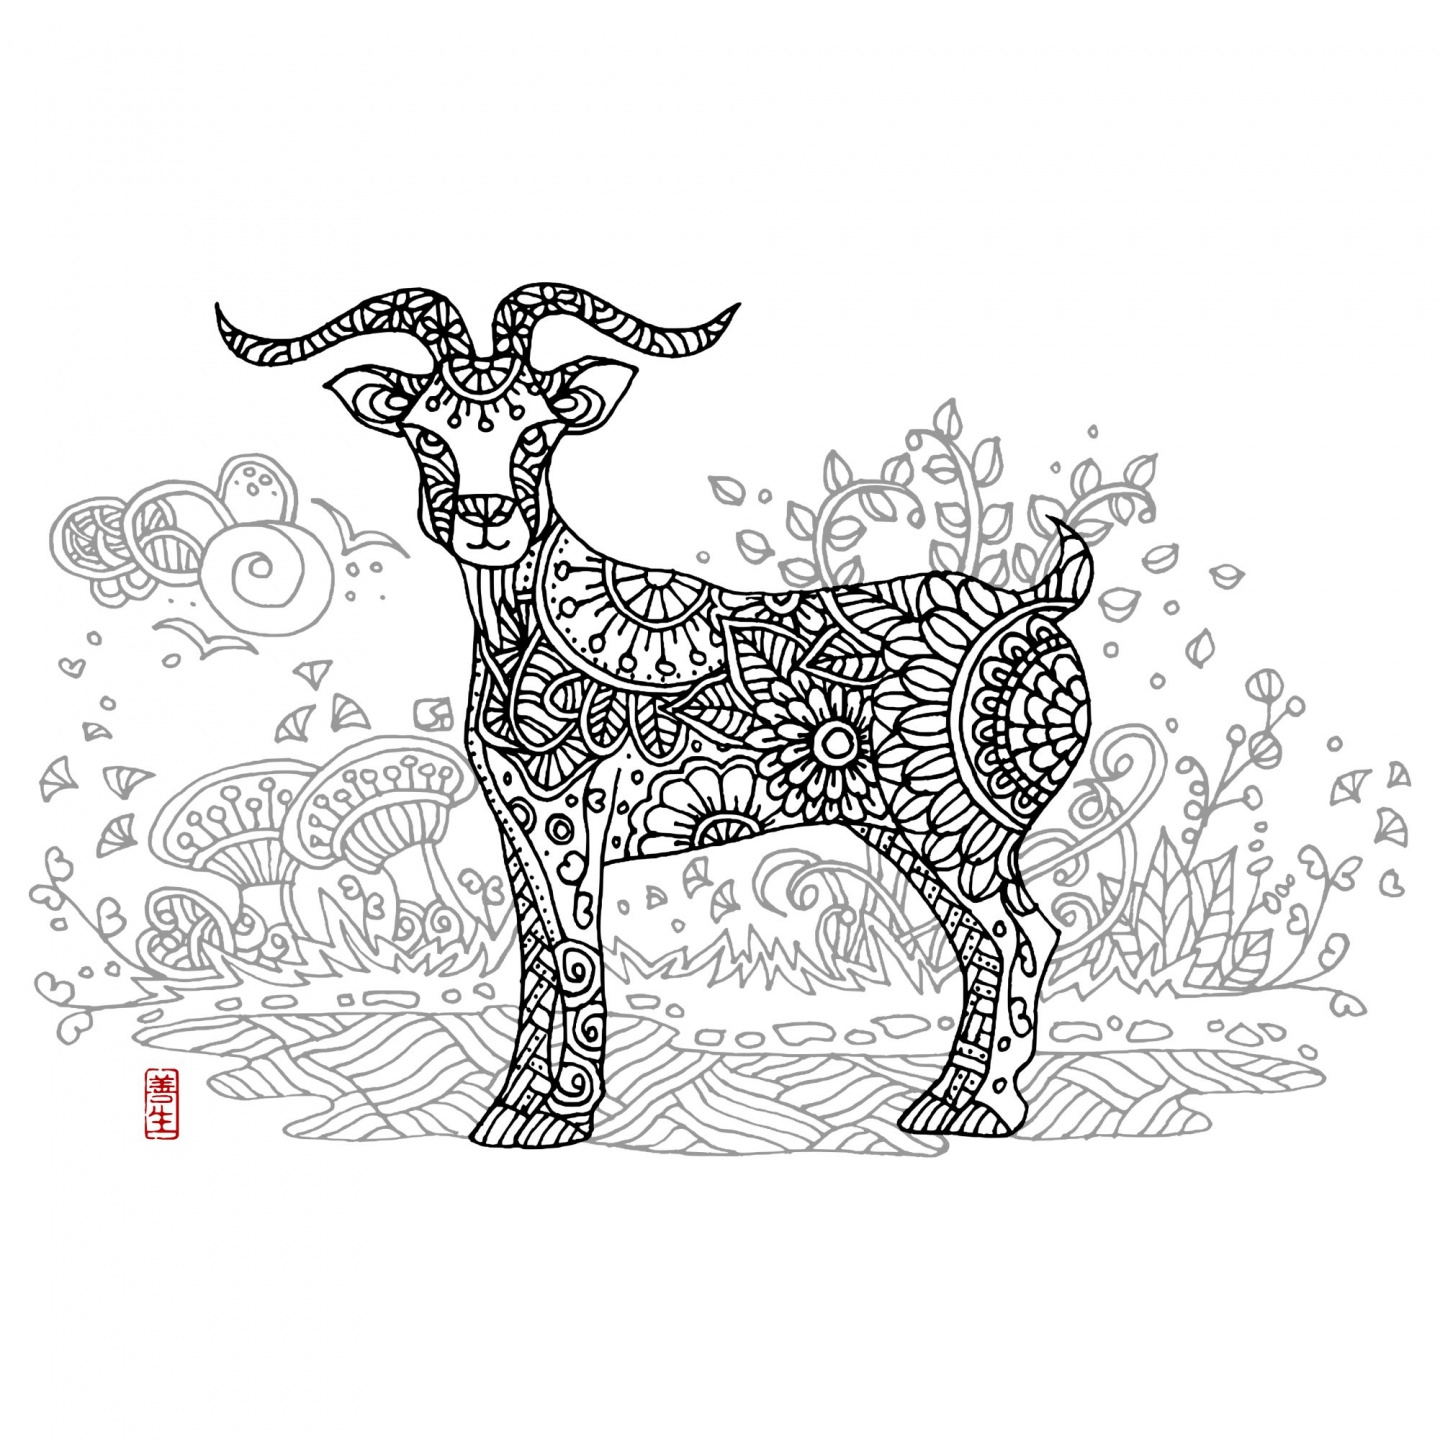 Chinese zodiac : GOAT